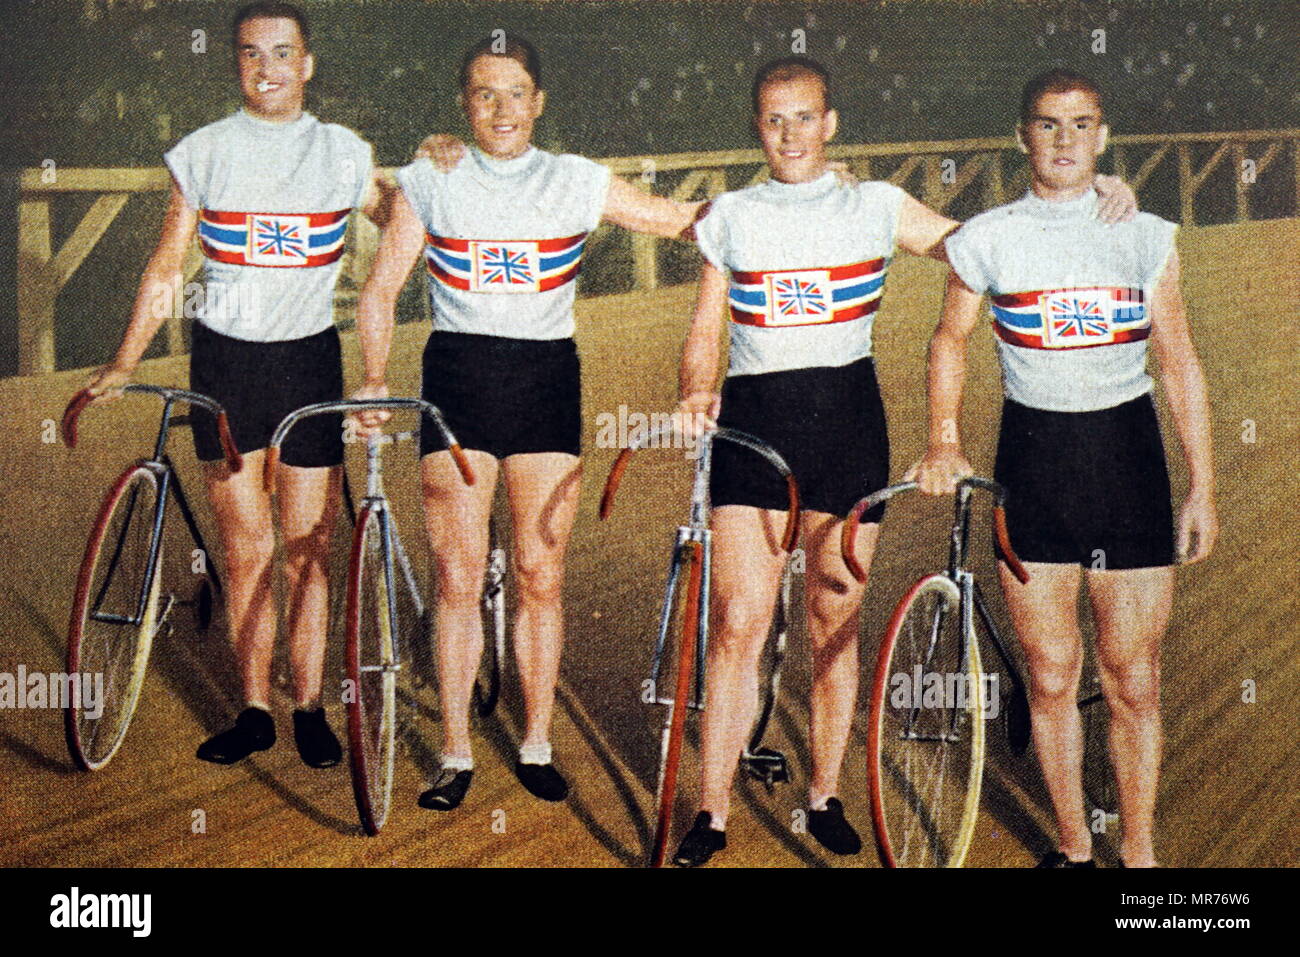 Photographie de la poursuite par équipe aux Jeux Olympiques de 1932. (De gauche à droite) Charles Holland (1908 - 1989), William Frank Southall (1904 - 1964), William Gladstone Harvell (1907 - 1985) et Ernest Alfred Johnson (1912 - 1997). Banque D'Images